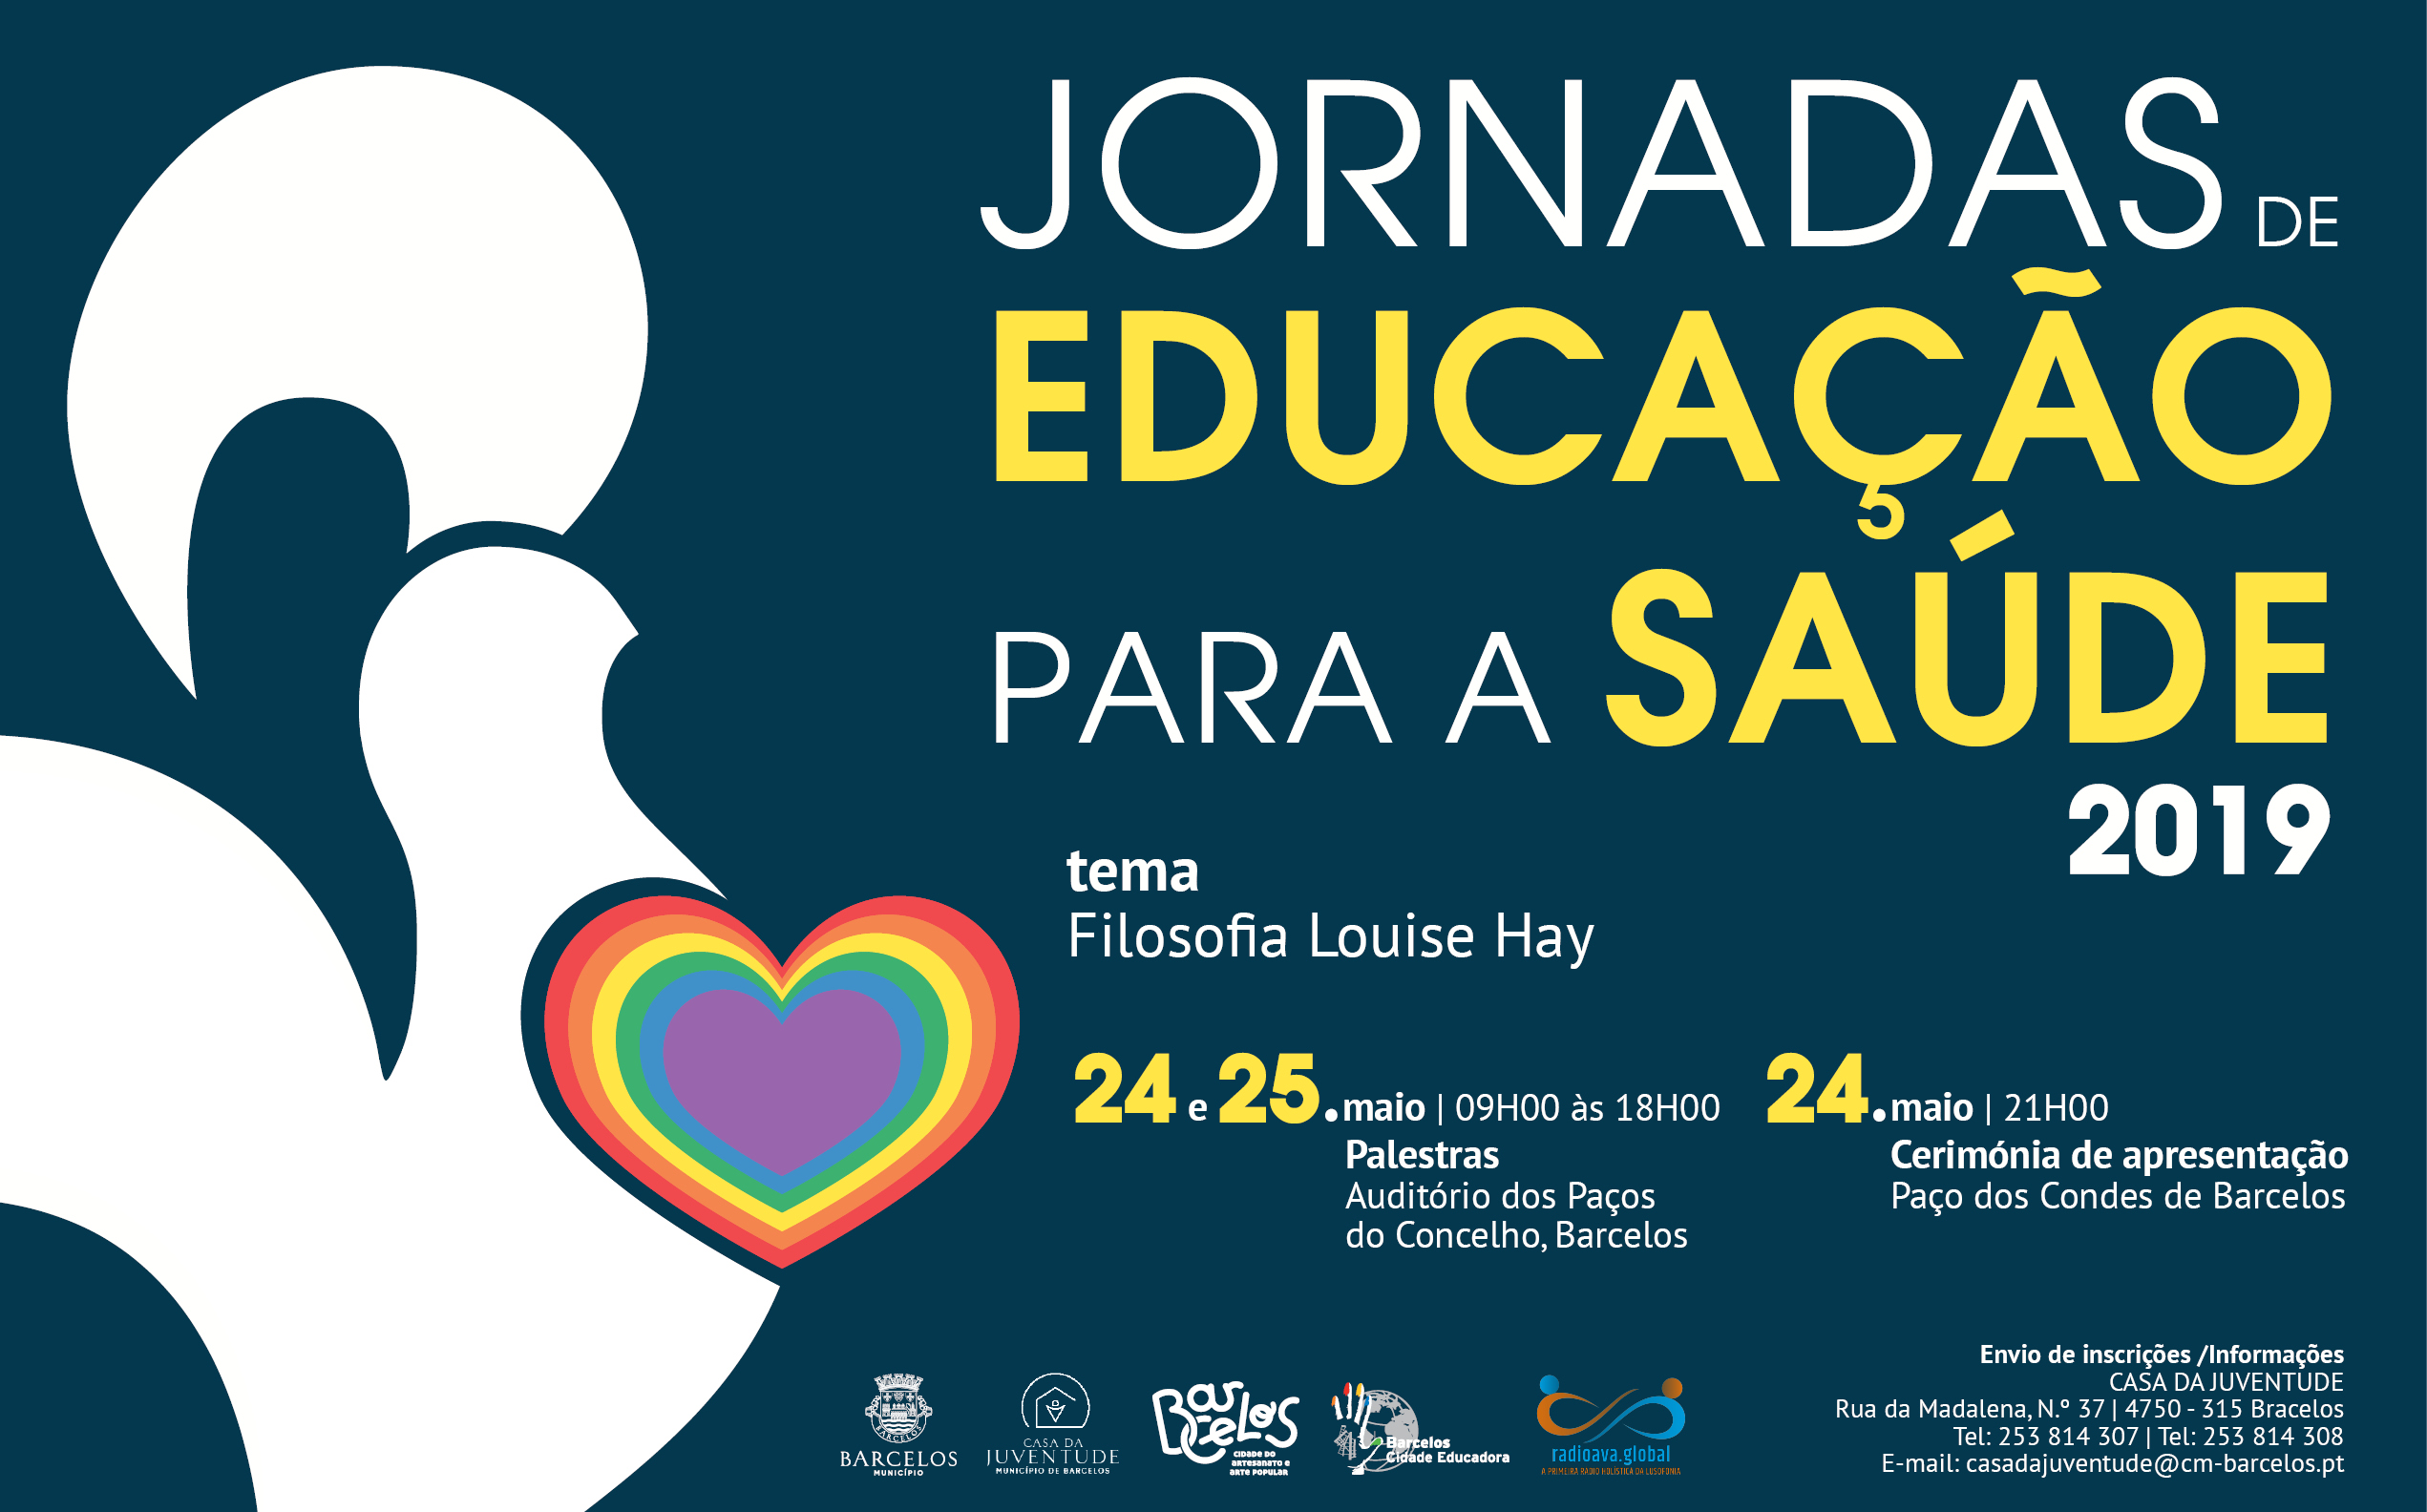 Câmara de Barcelos promove Jornadas de Educação para a Saúde